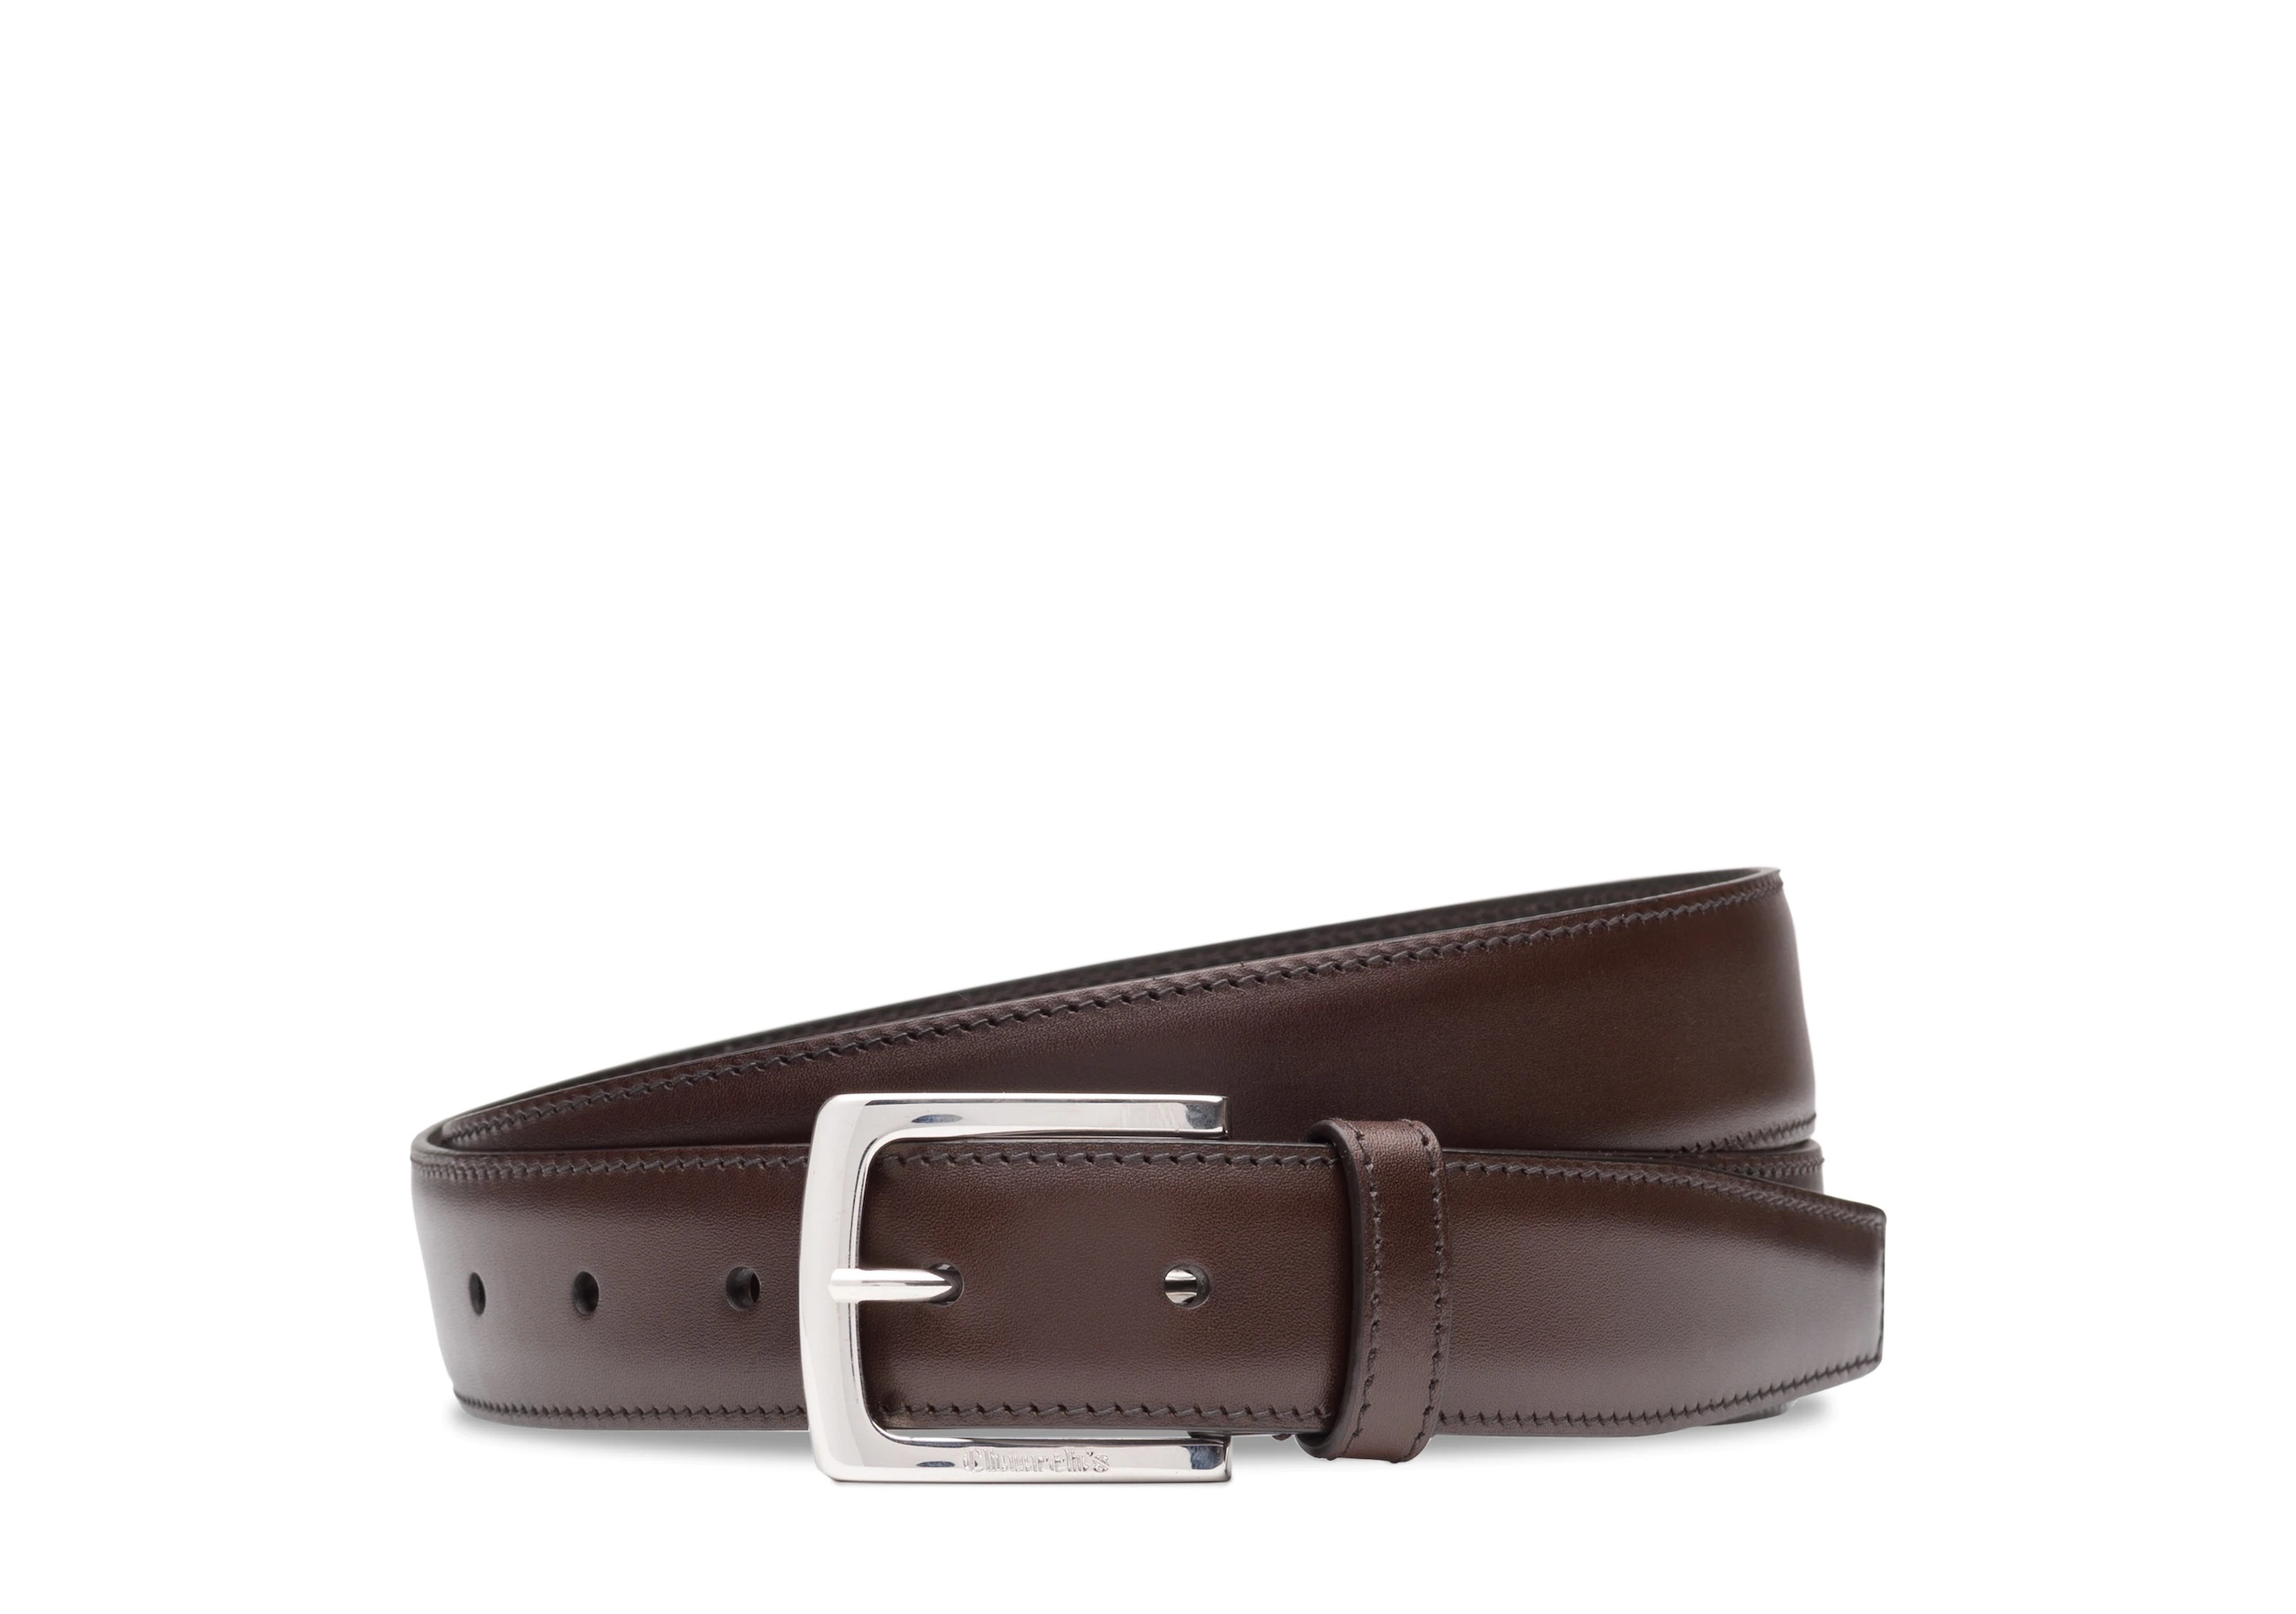 Square buckle belt
Nevada Leather Ebony - 1